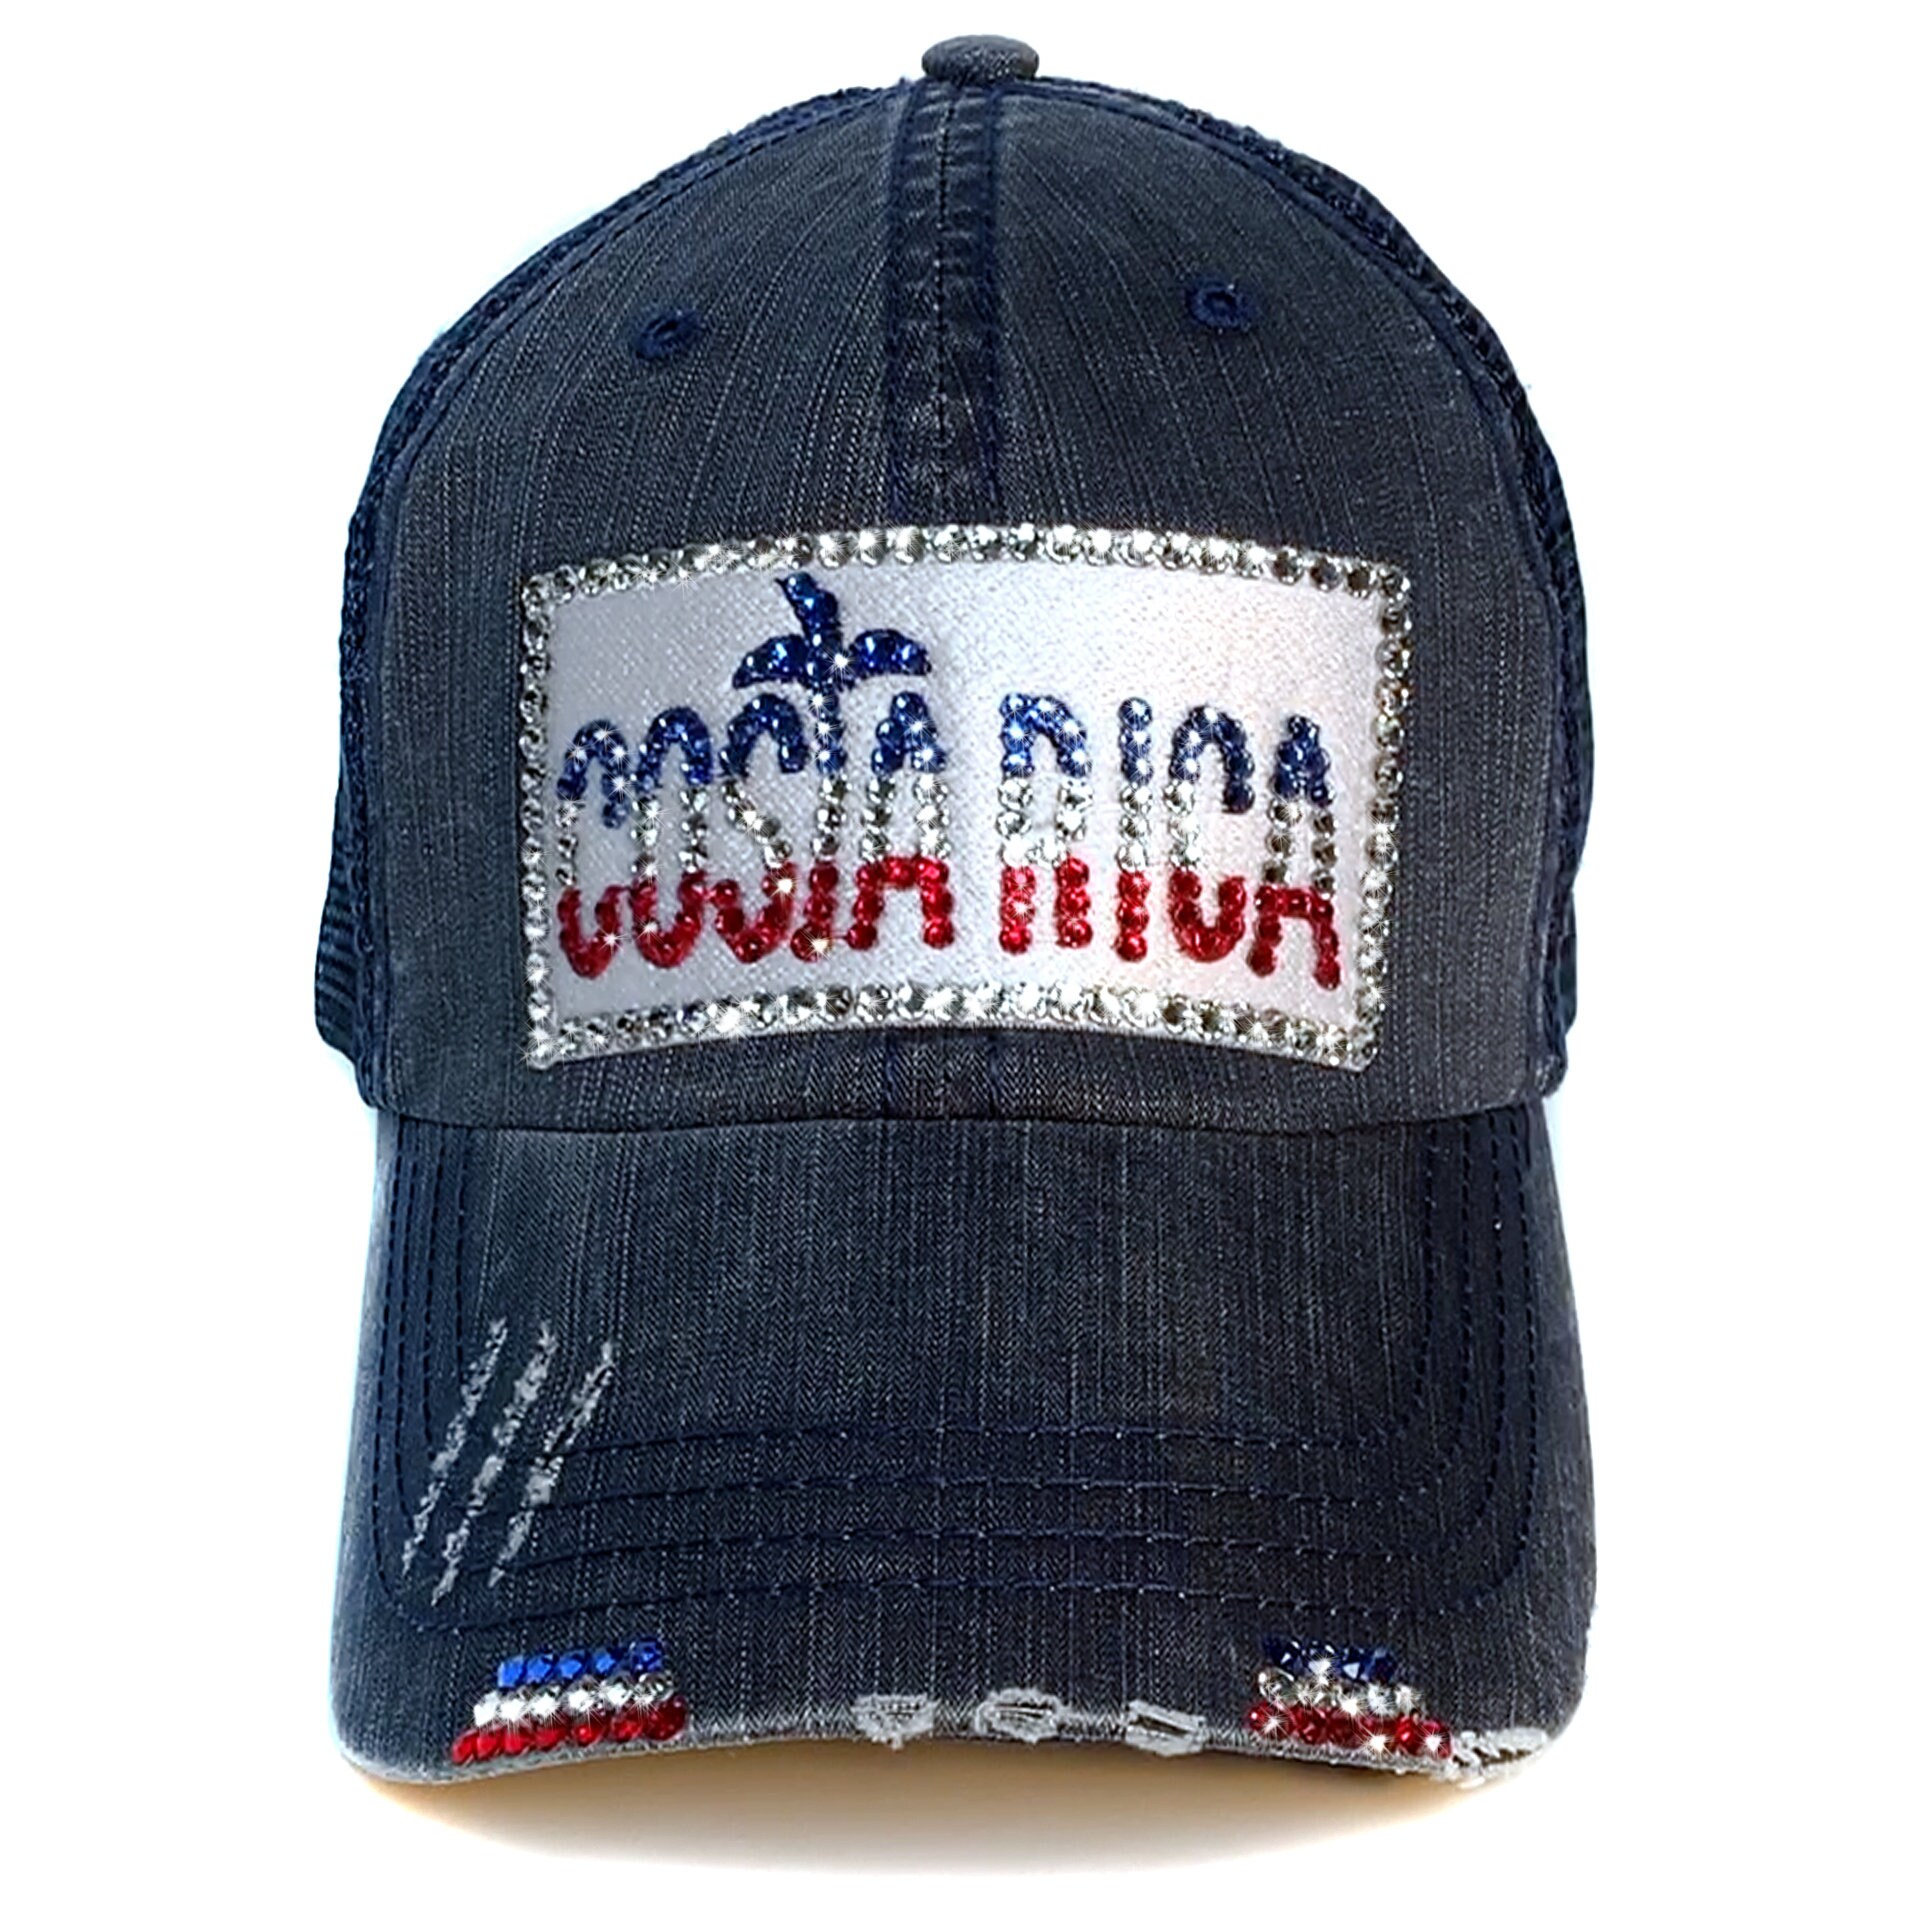 Costa Rica Hat 